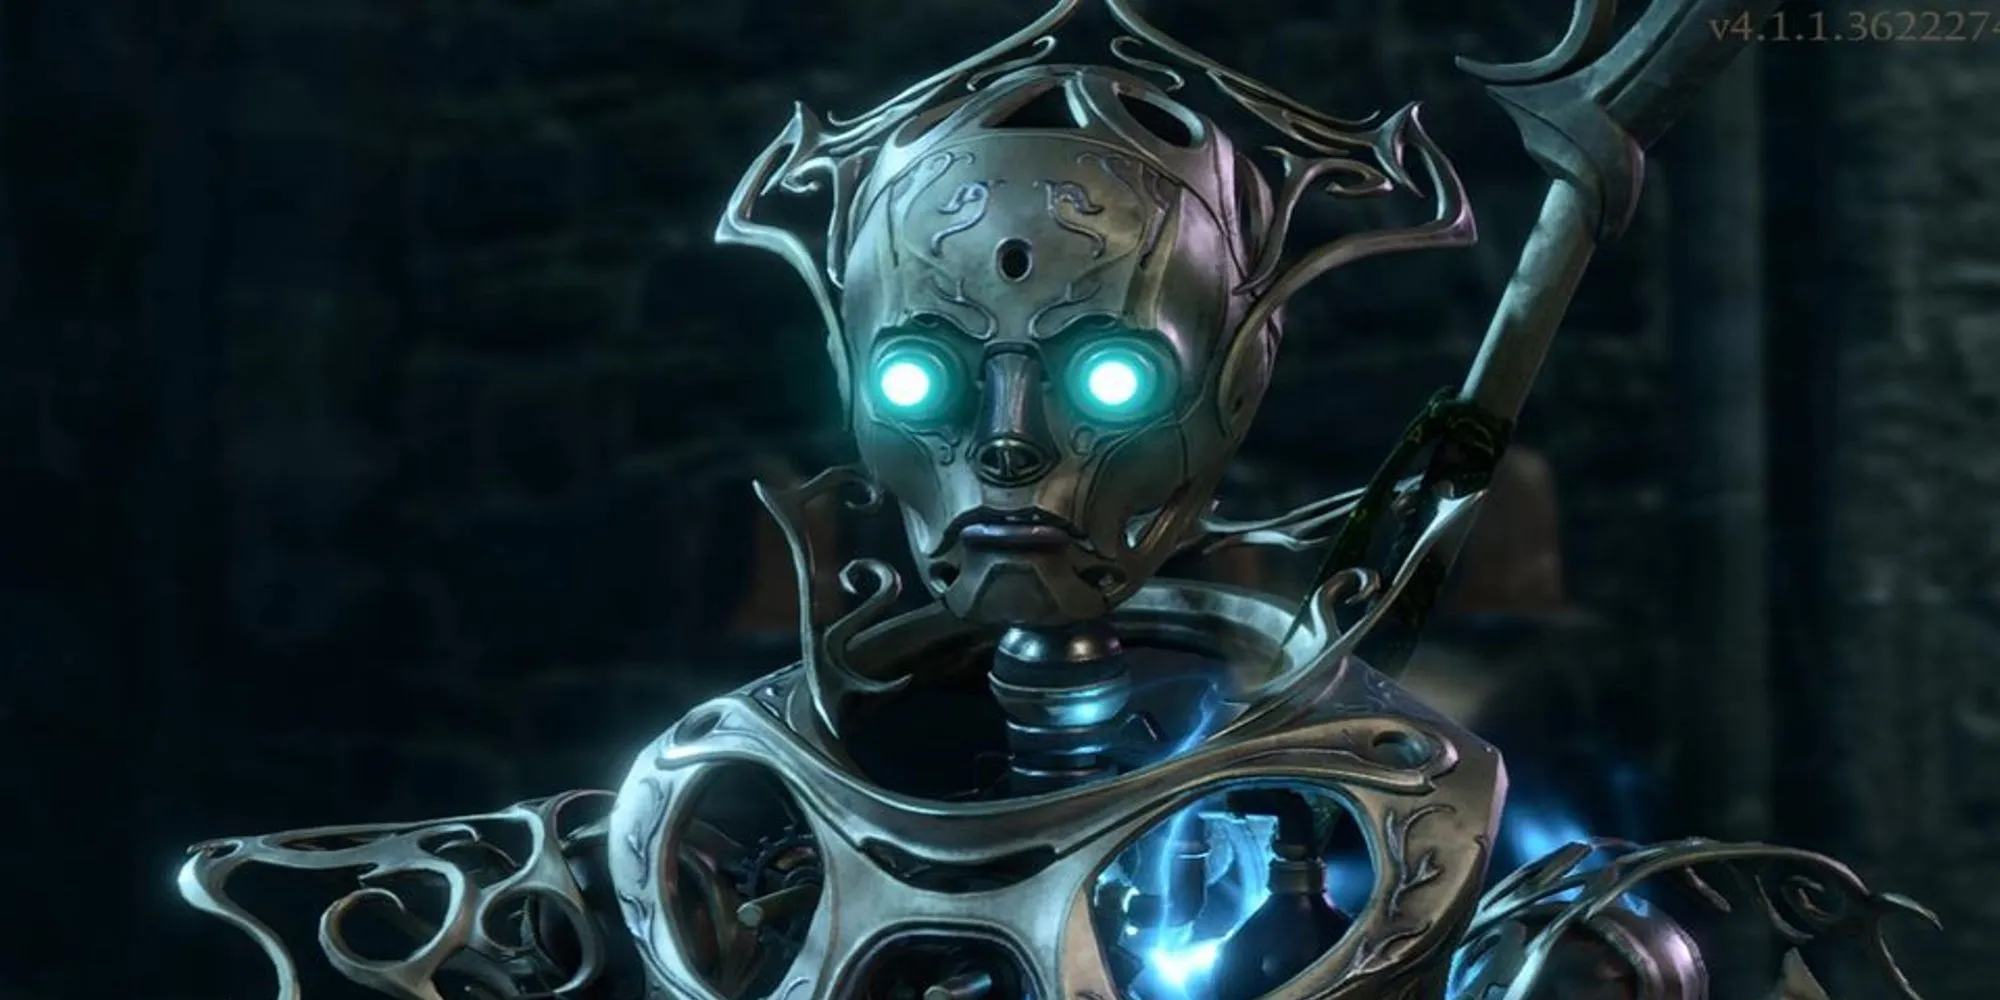 발더스 게이트 3 언더다크의 마법 탑에서 나온 자동화 로봇인 버나드